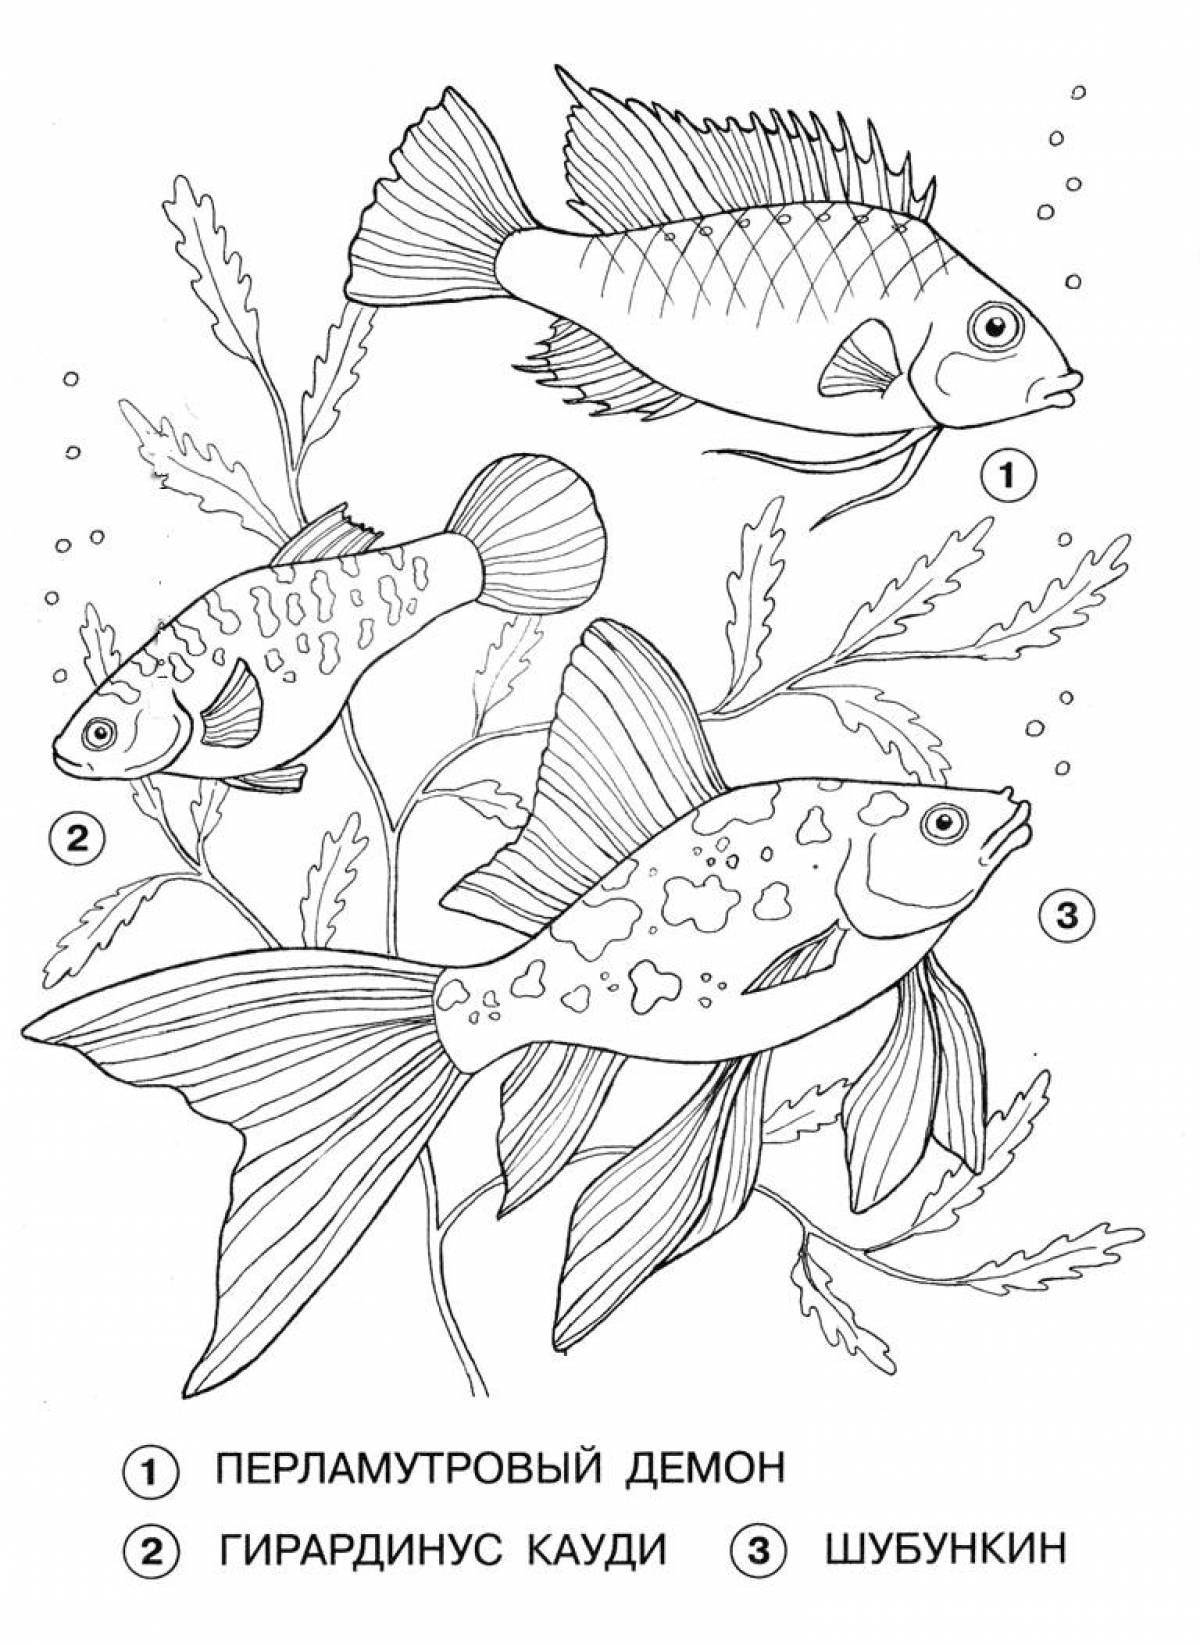 Aquarium inhabitants